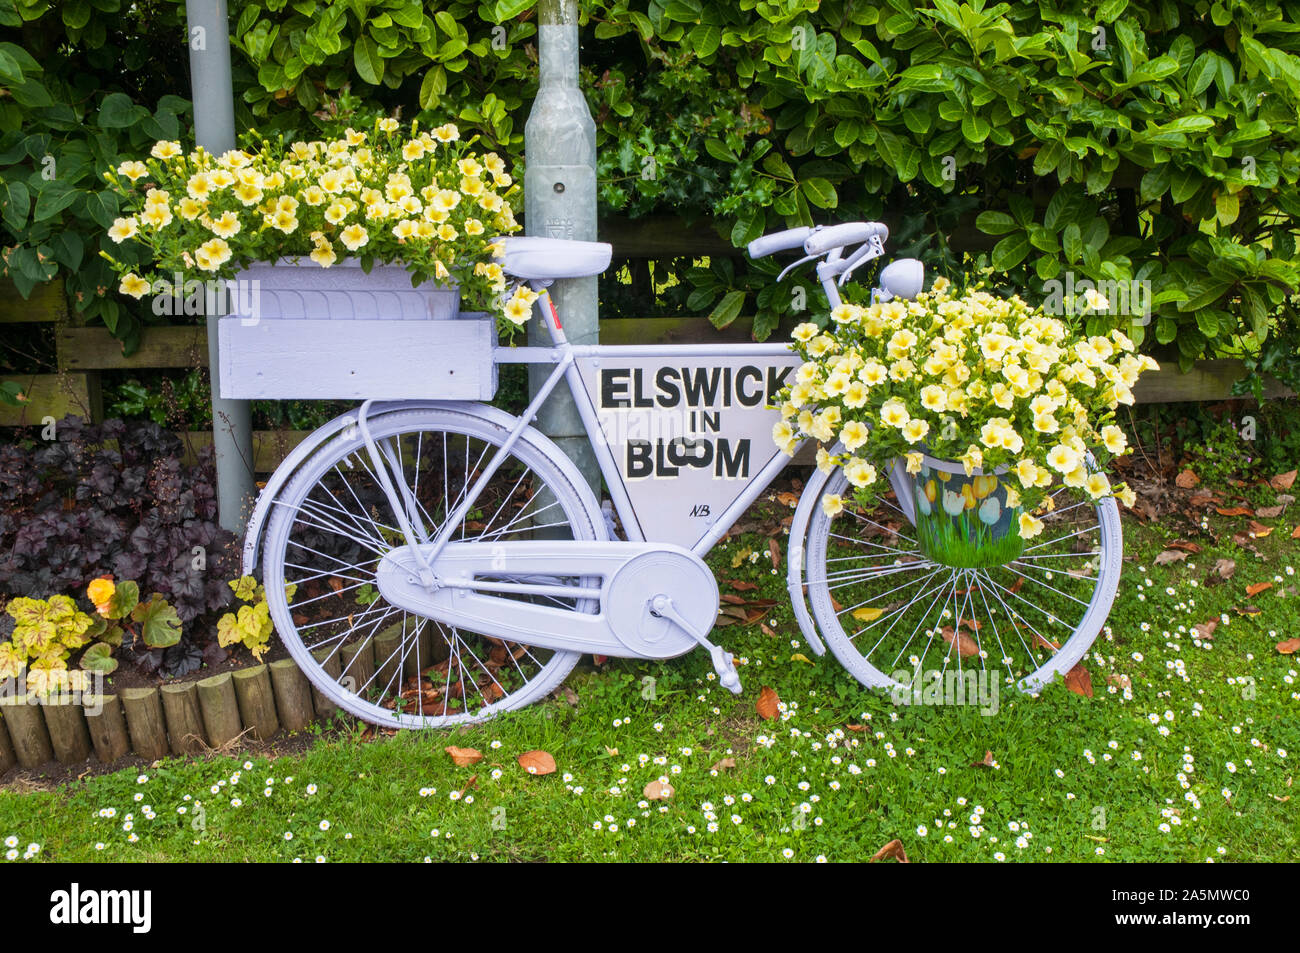 Location bord peint en blanc avec des fleurs de pétunias surfina jaune sur elle. Elswick village le mieux gardé de Lancashire England UK Banque D'Images